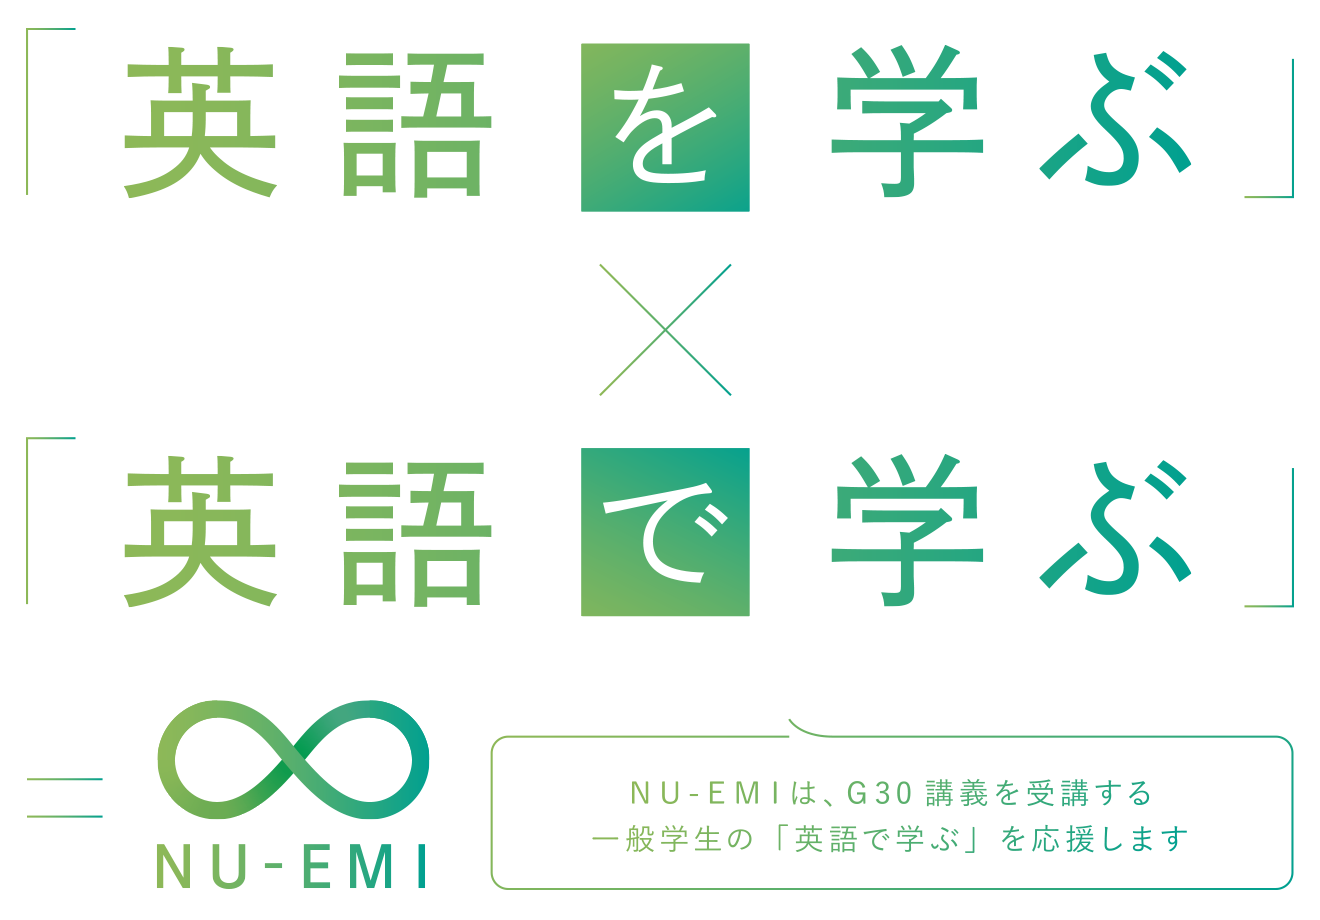 名古屋大学 NU-EMIプロジェクト G30講義を受講する一般学生の「英語で学ぶ」を応援します